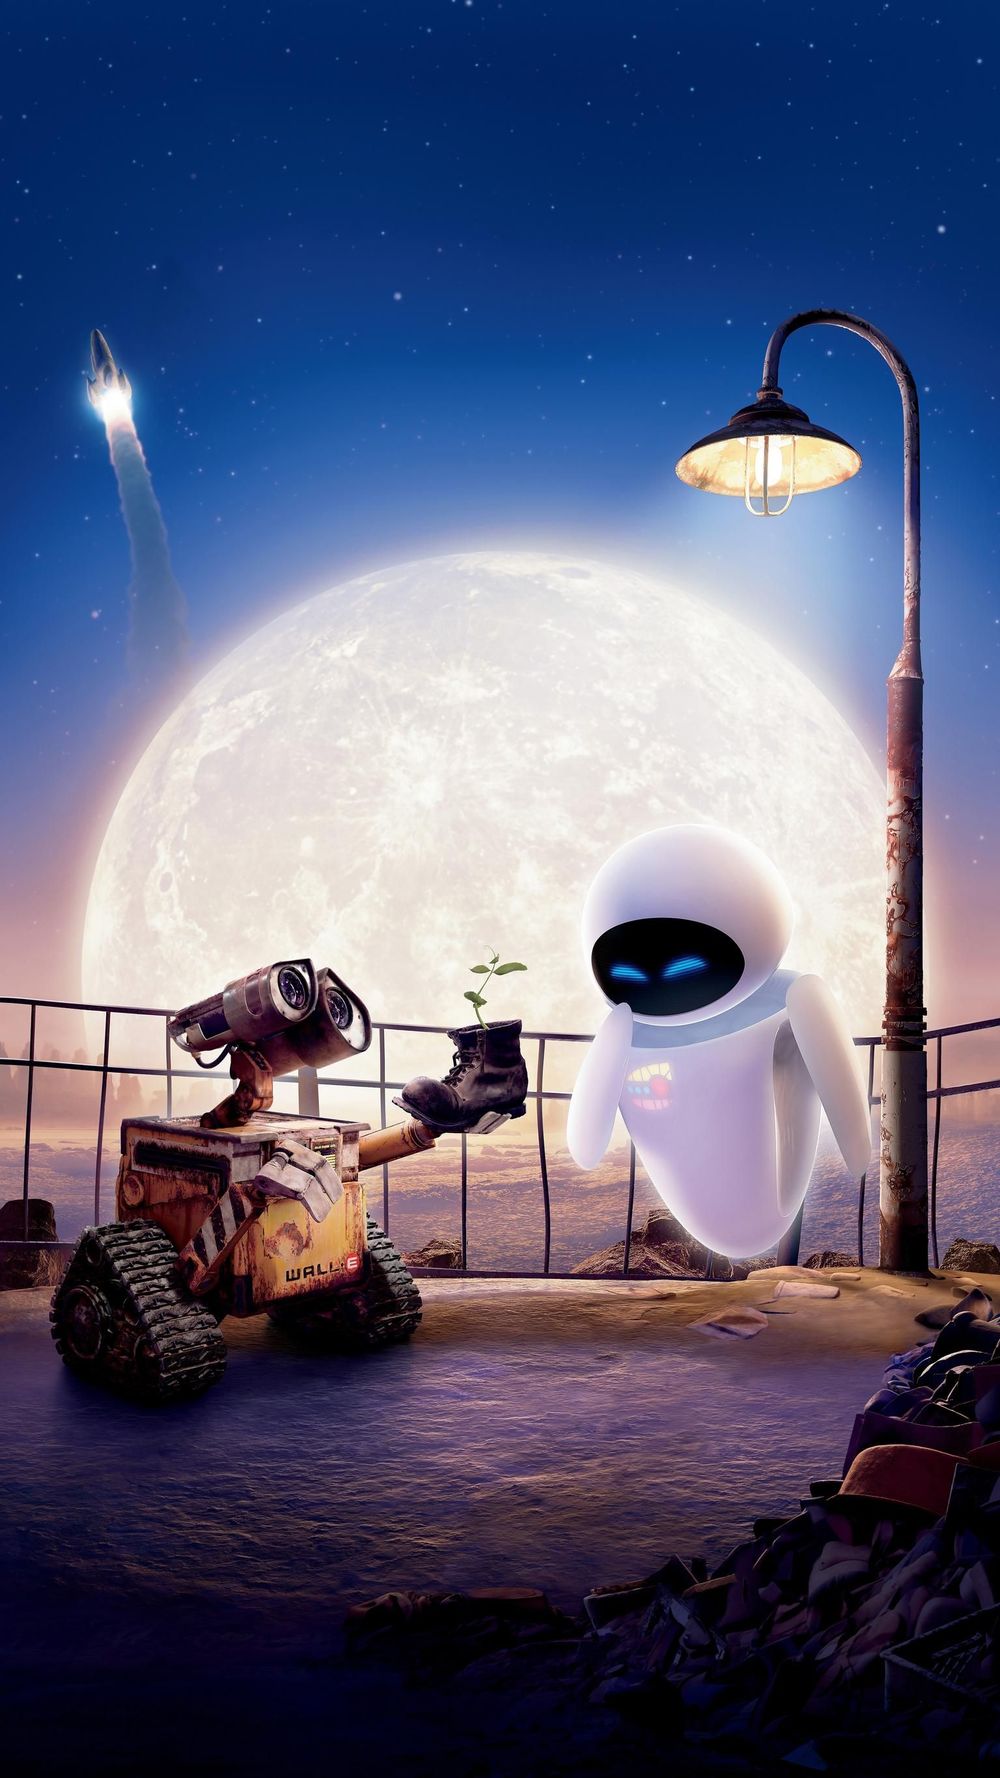  
Eve cuối cùng cũng mềm lòng vì tình cảm chân thành của WALL.E (Ảnh: Pinterest)